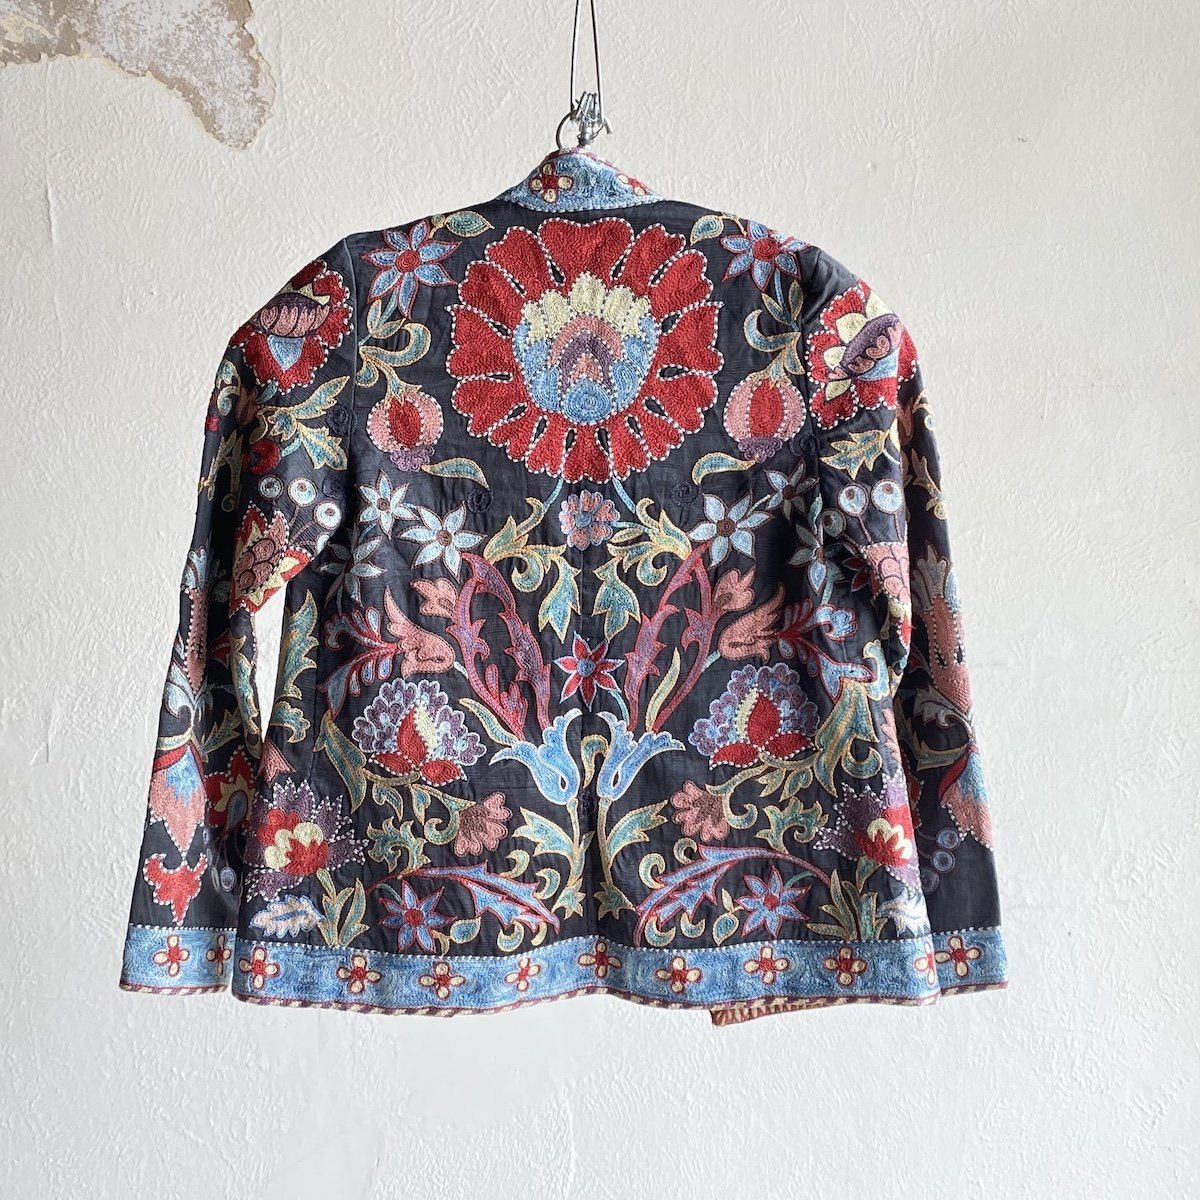 Hand-Stitched Suzani Jacket from Uzbekistan